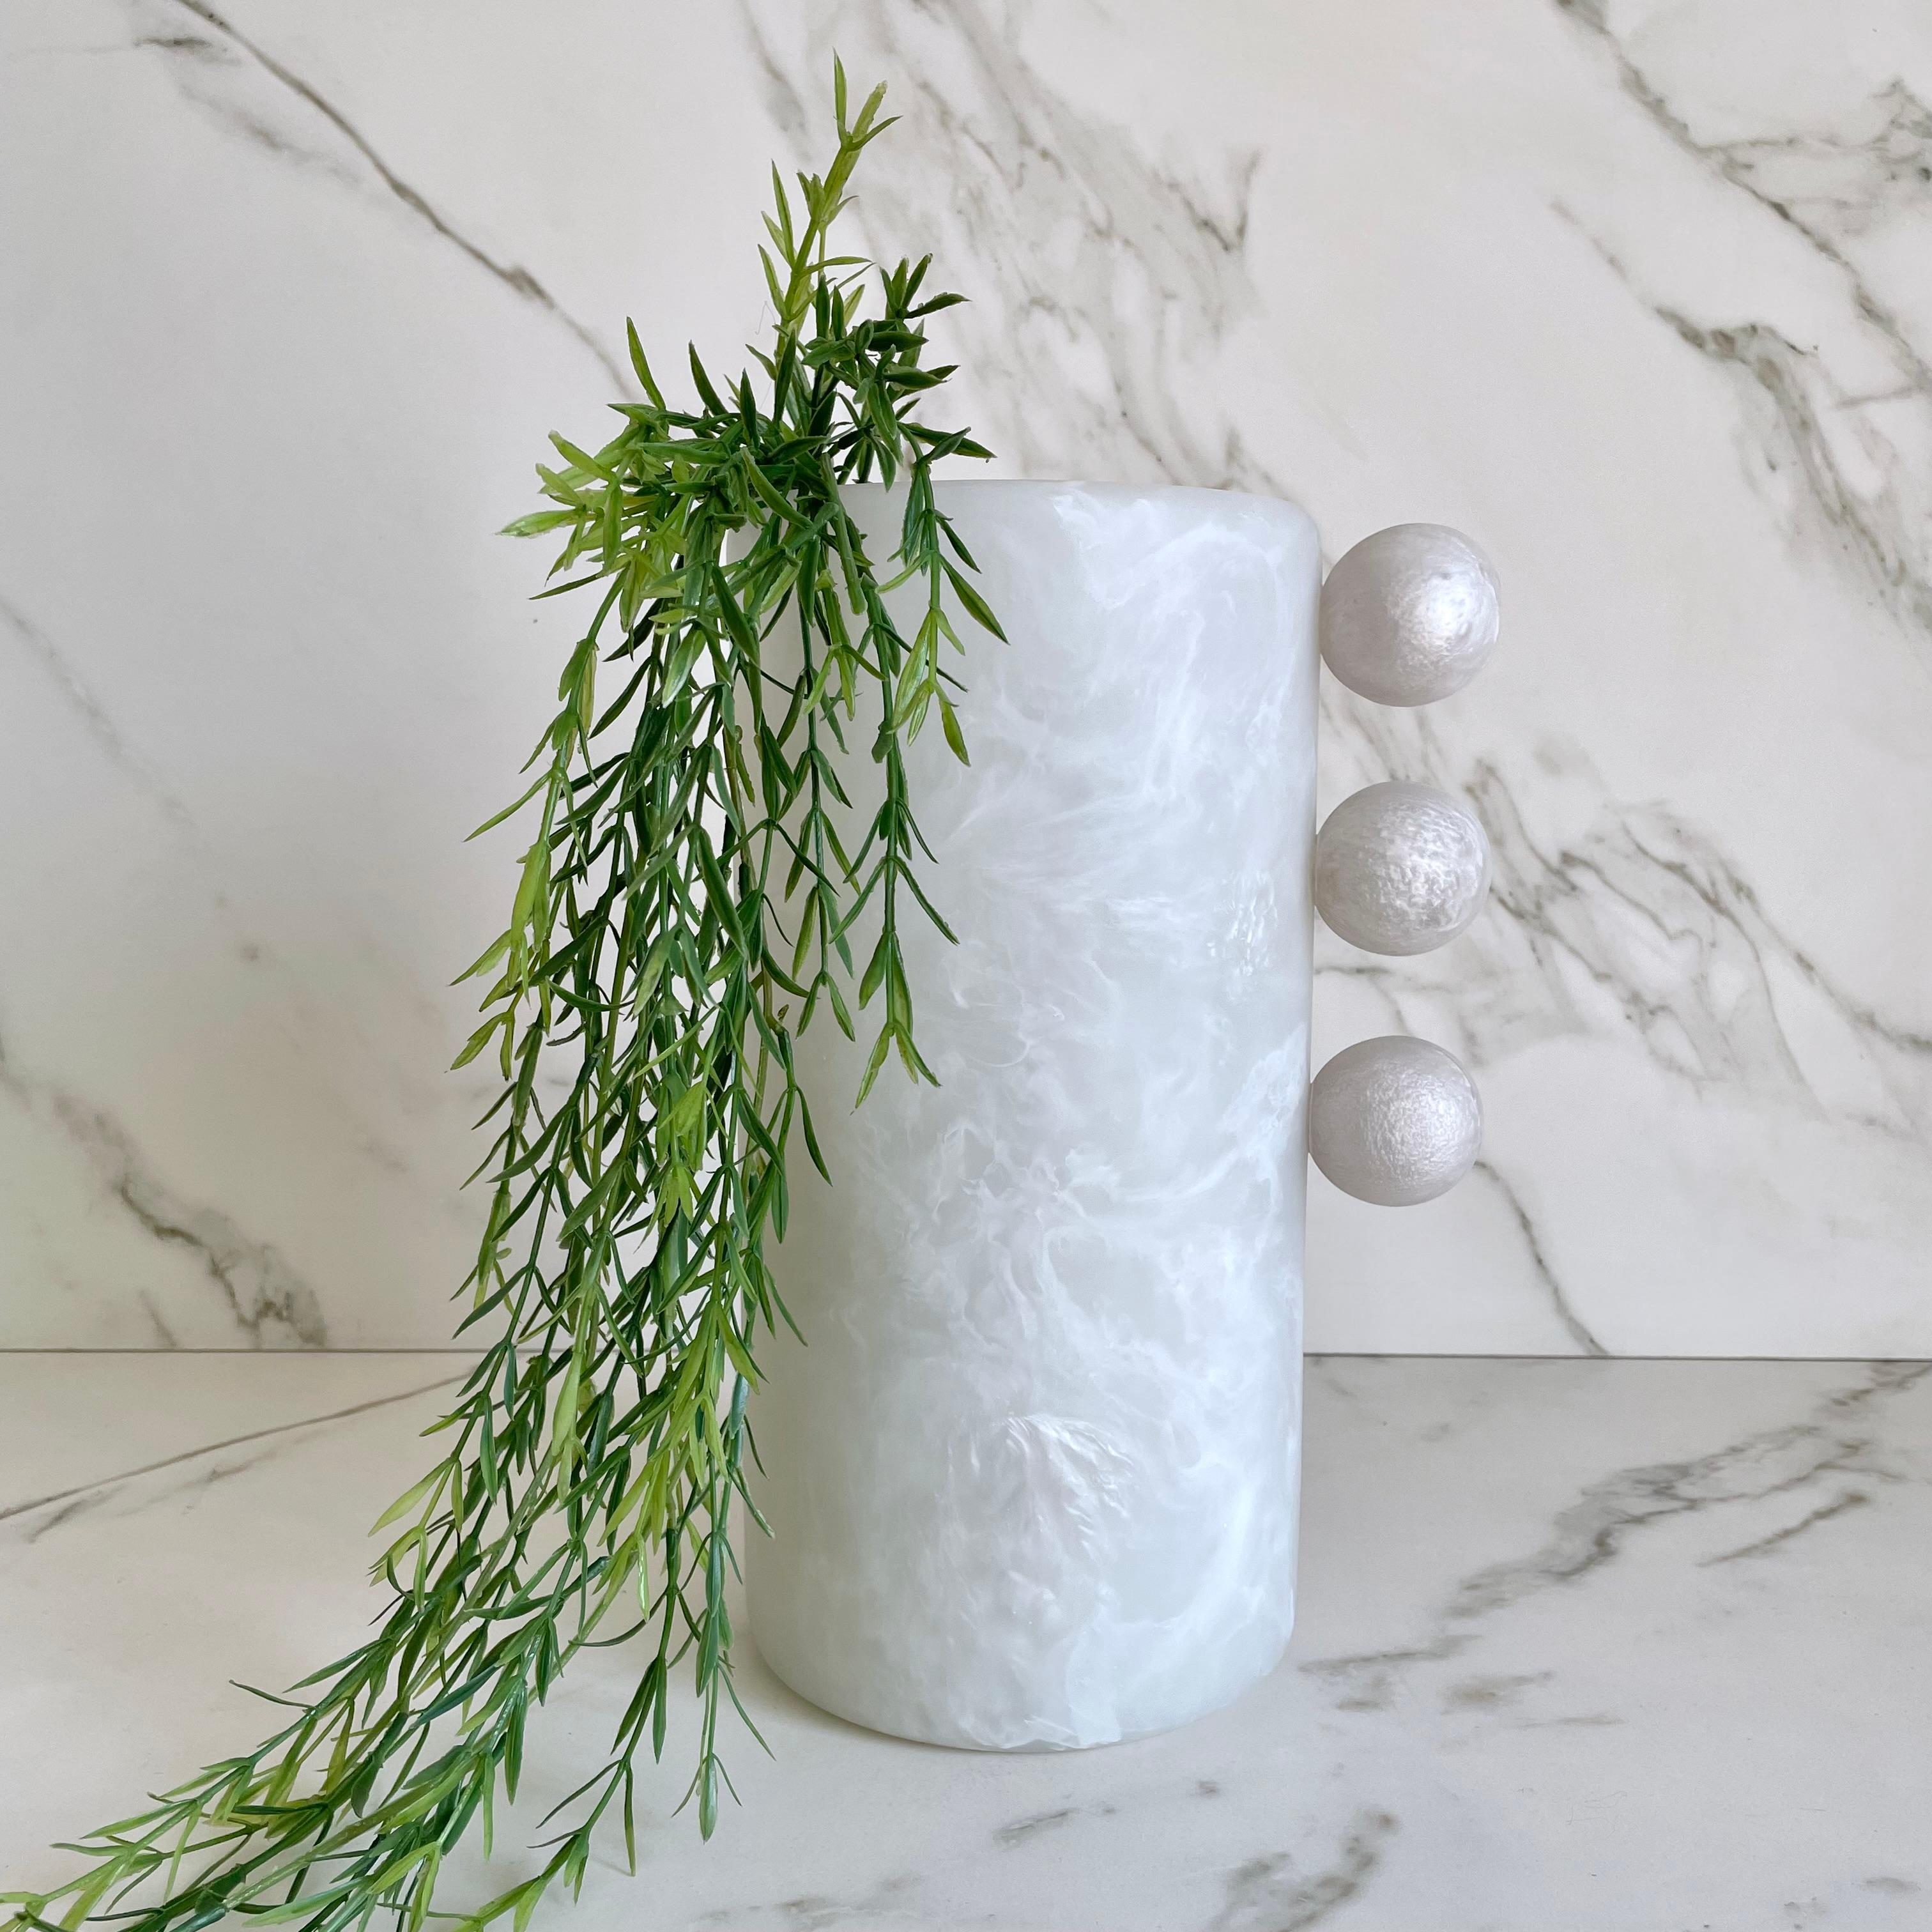 Die auffällige und elegante Tall Bubble Vase hat eine einzigartige Silhouette, die jedem Raum eine moderne und verspielte Note verleiht. Ob als Einrichtungsgegenstand oder als Blumenschmuck, diese Vase ist ebenso vielseitig wie schön.

Erhältlich in